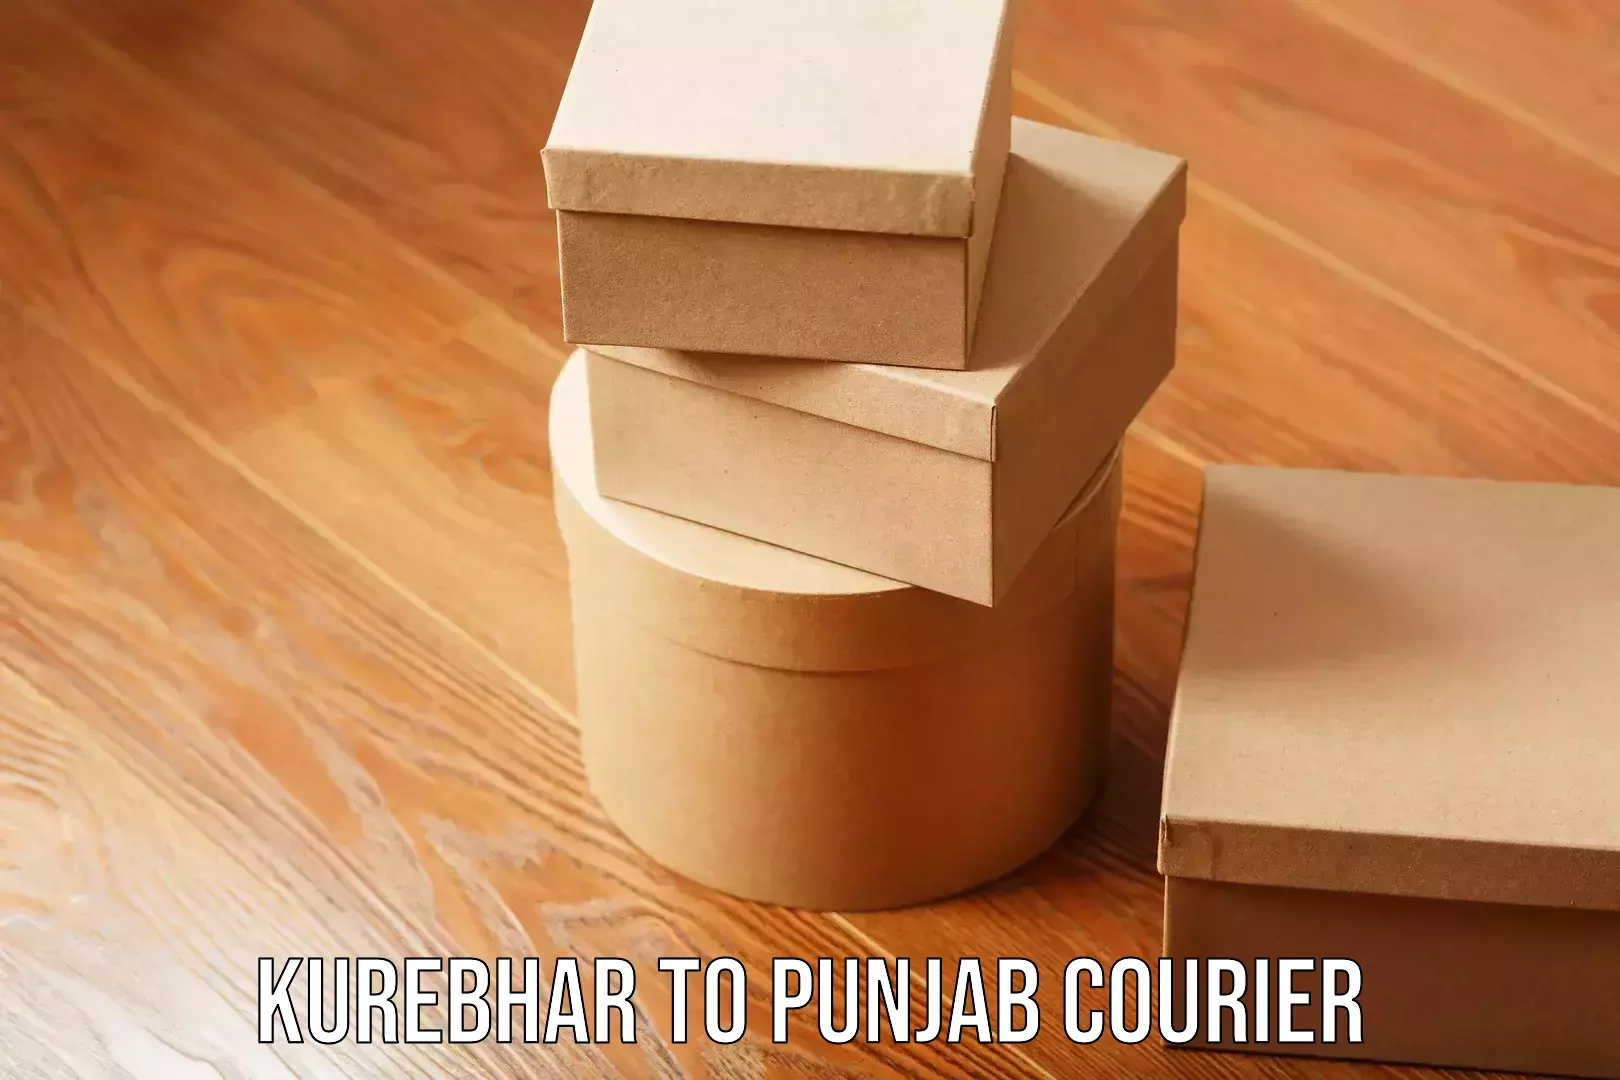 Furniture relocation experts Kurebhar to Punjab